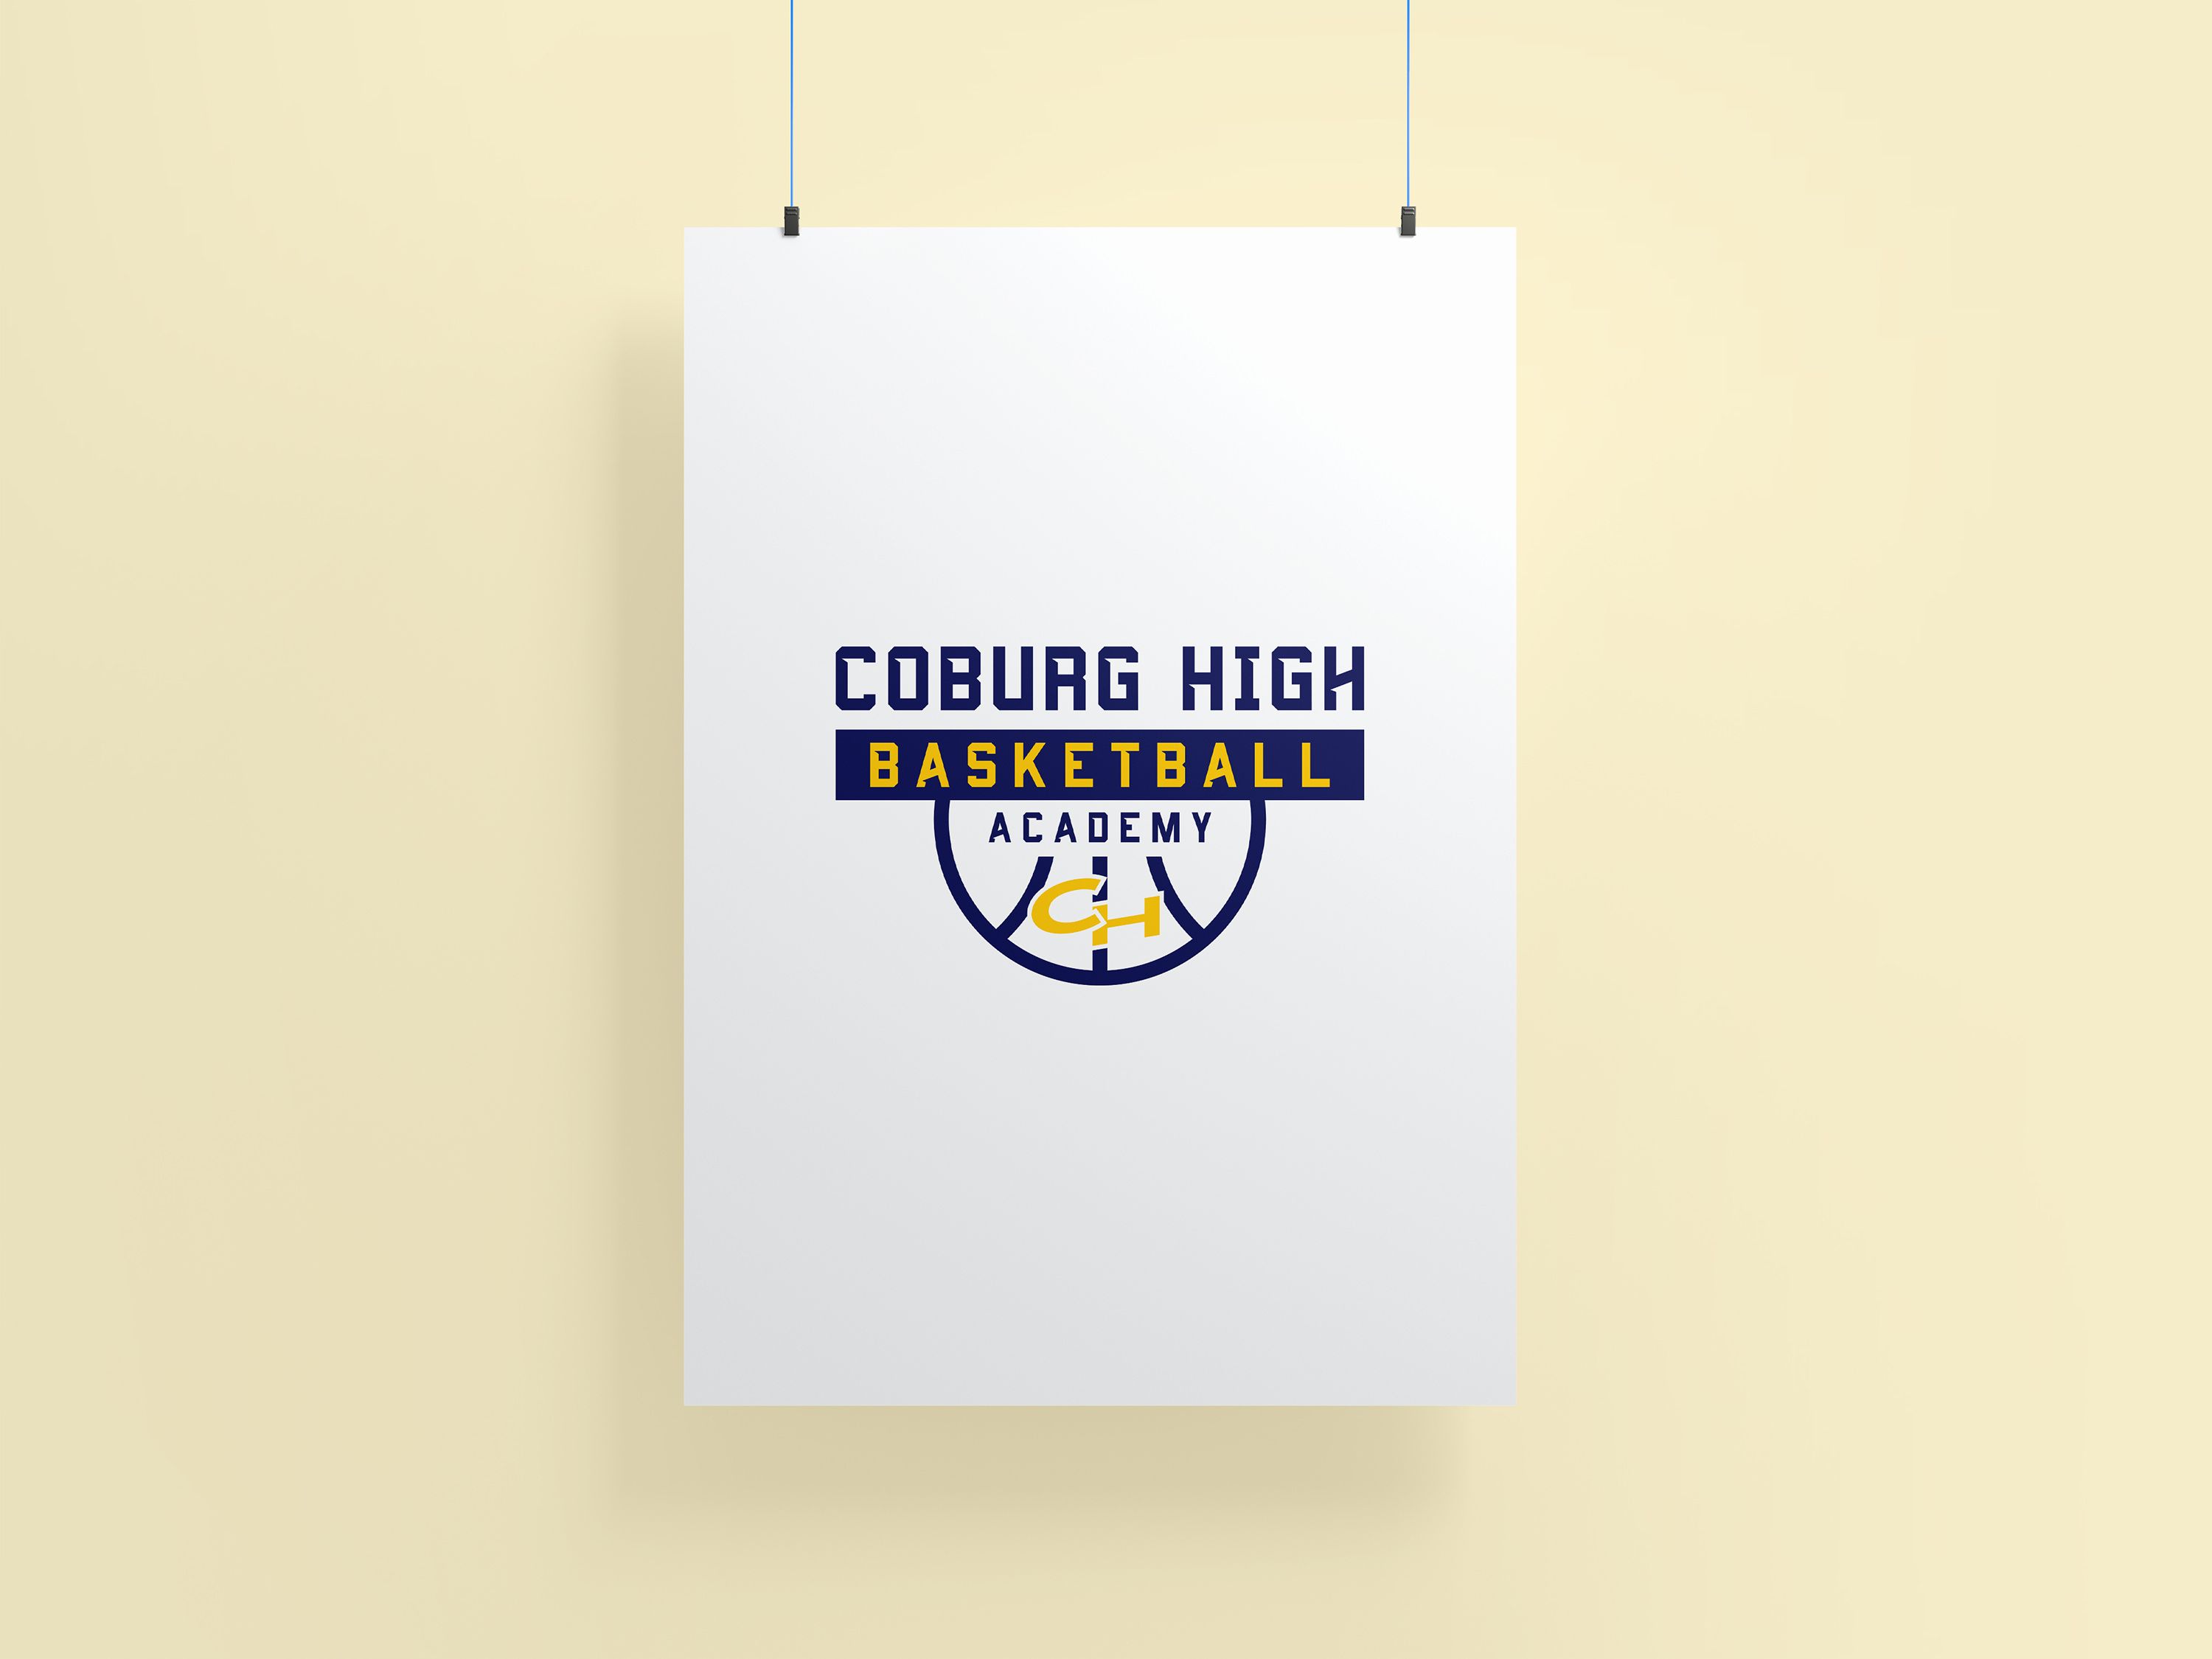 Coburg High Basketball Academy colour logo version